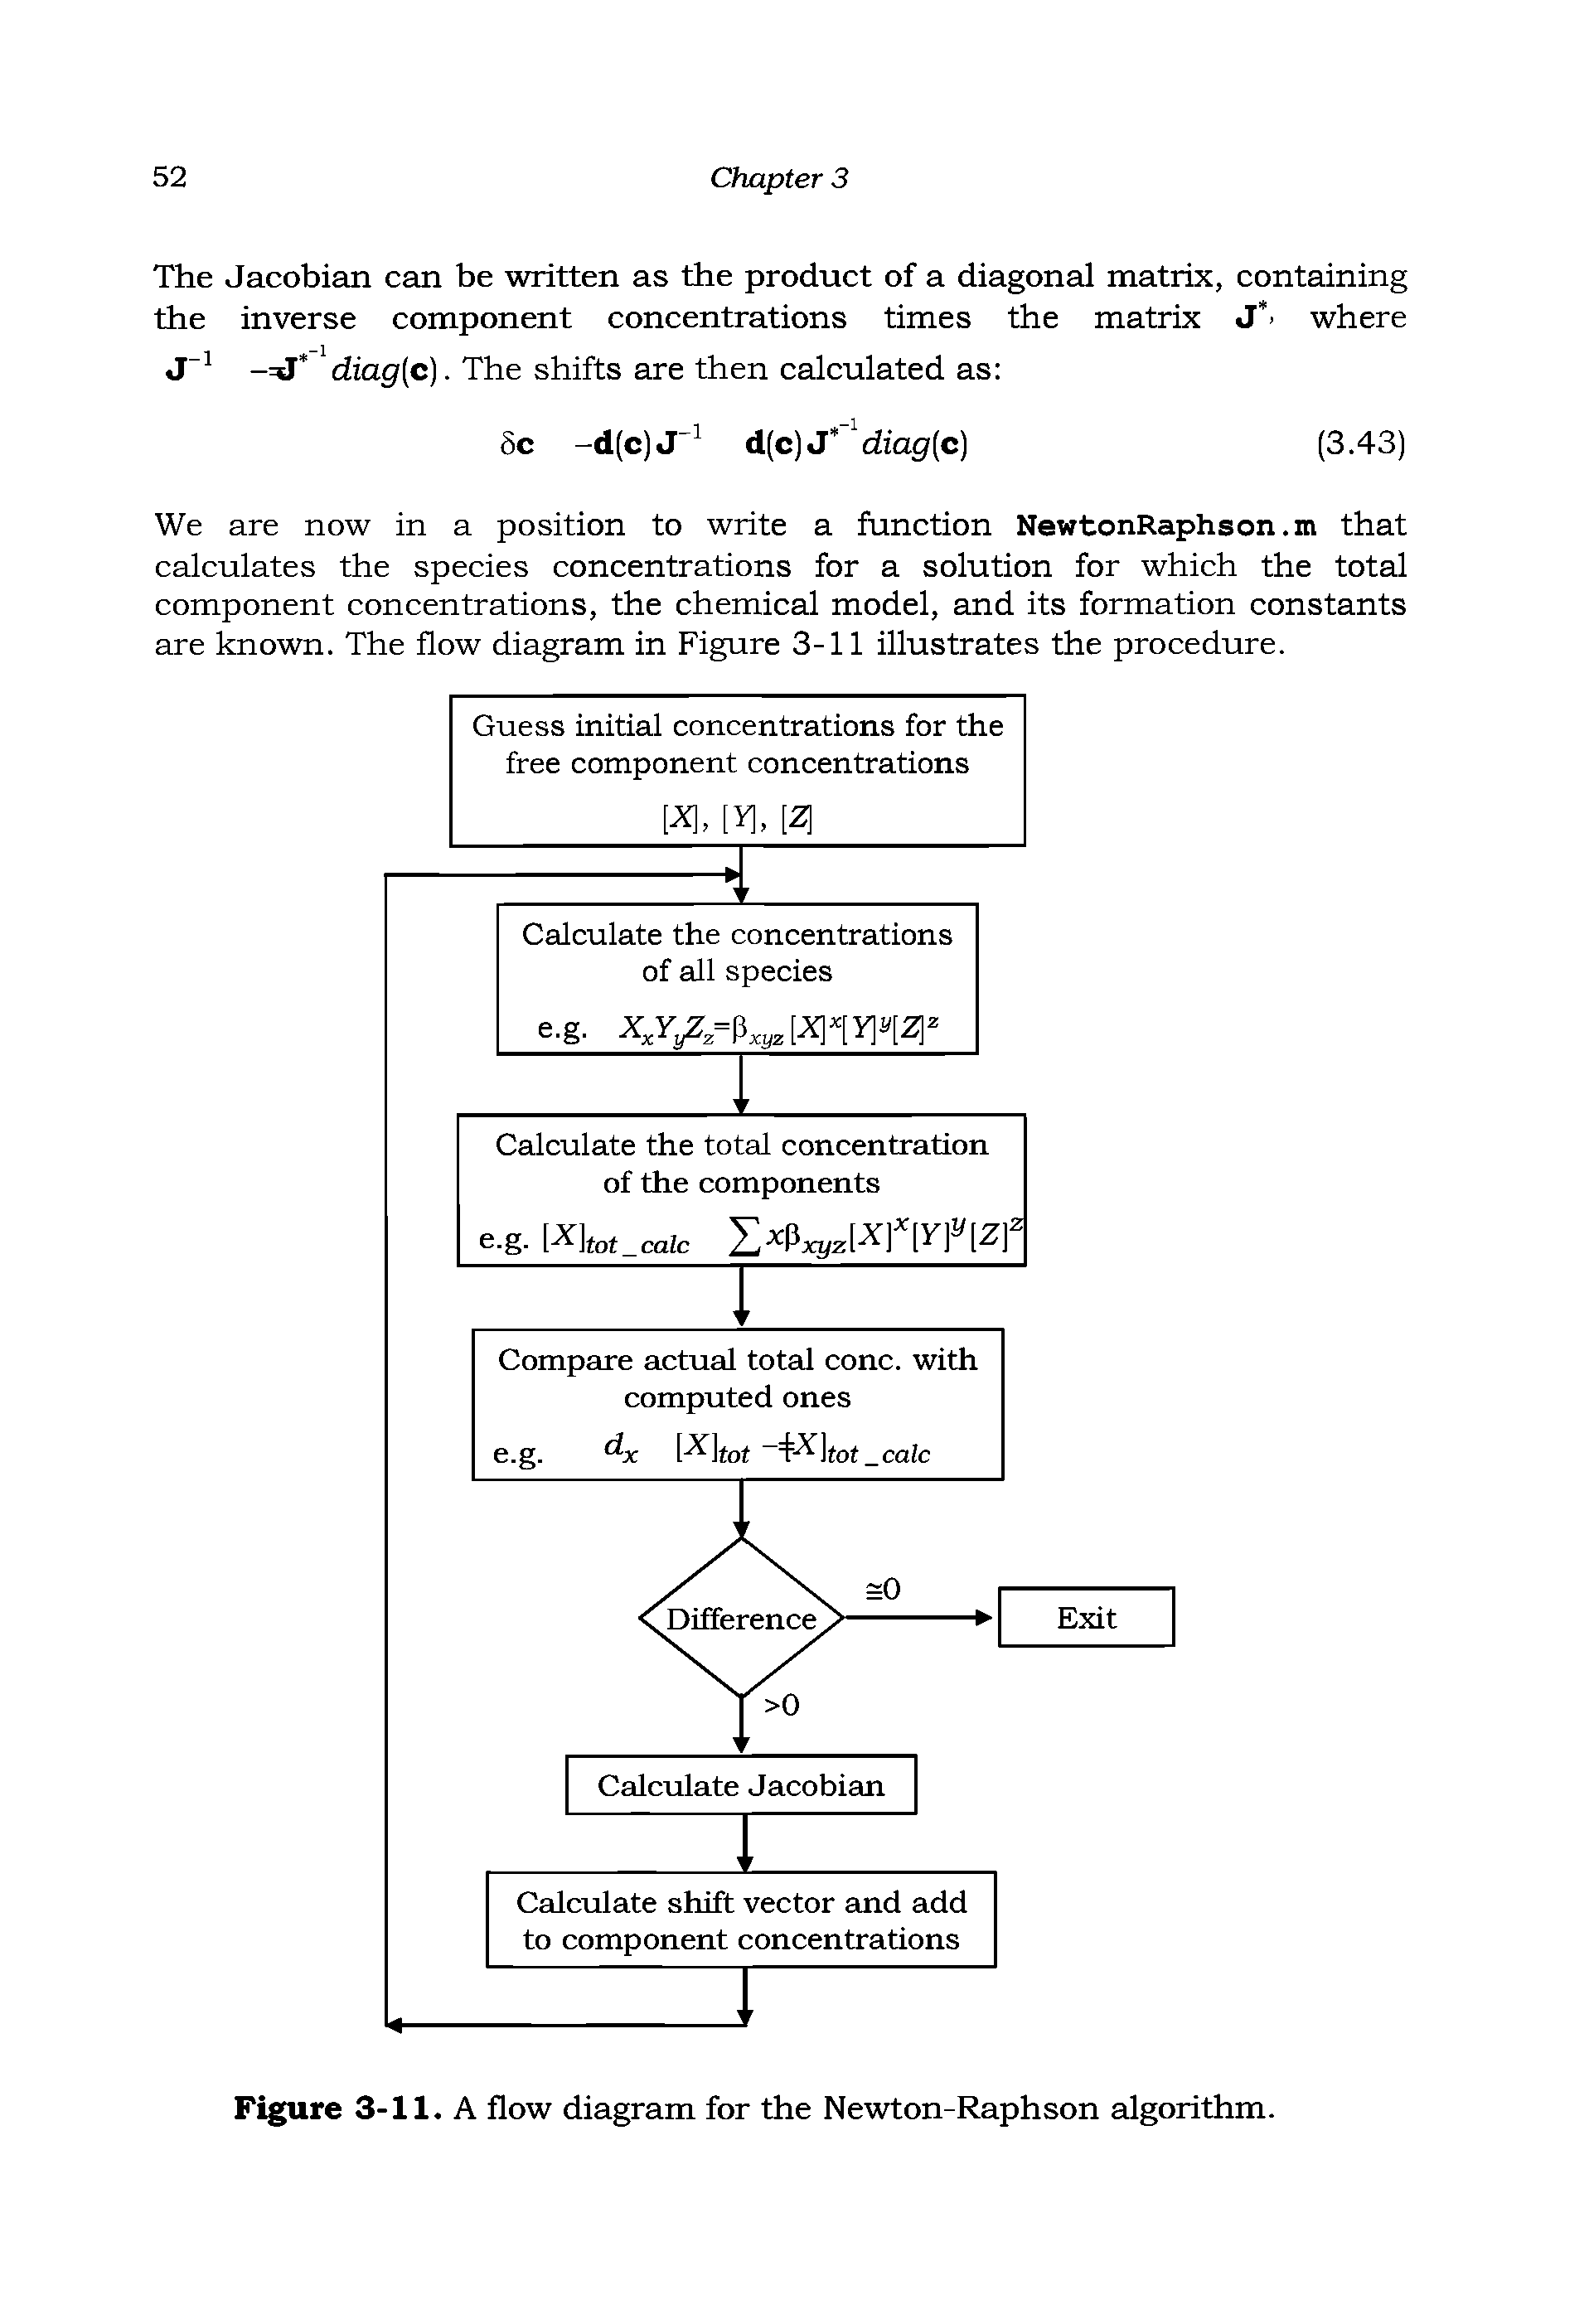 Figure 3-11. A flow diagram for the Newton-Raphson algorithm.